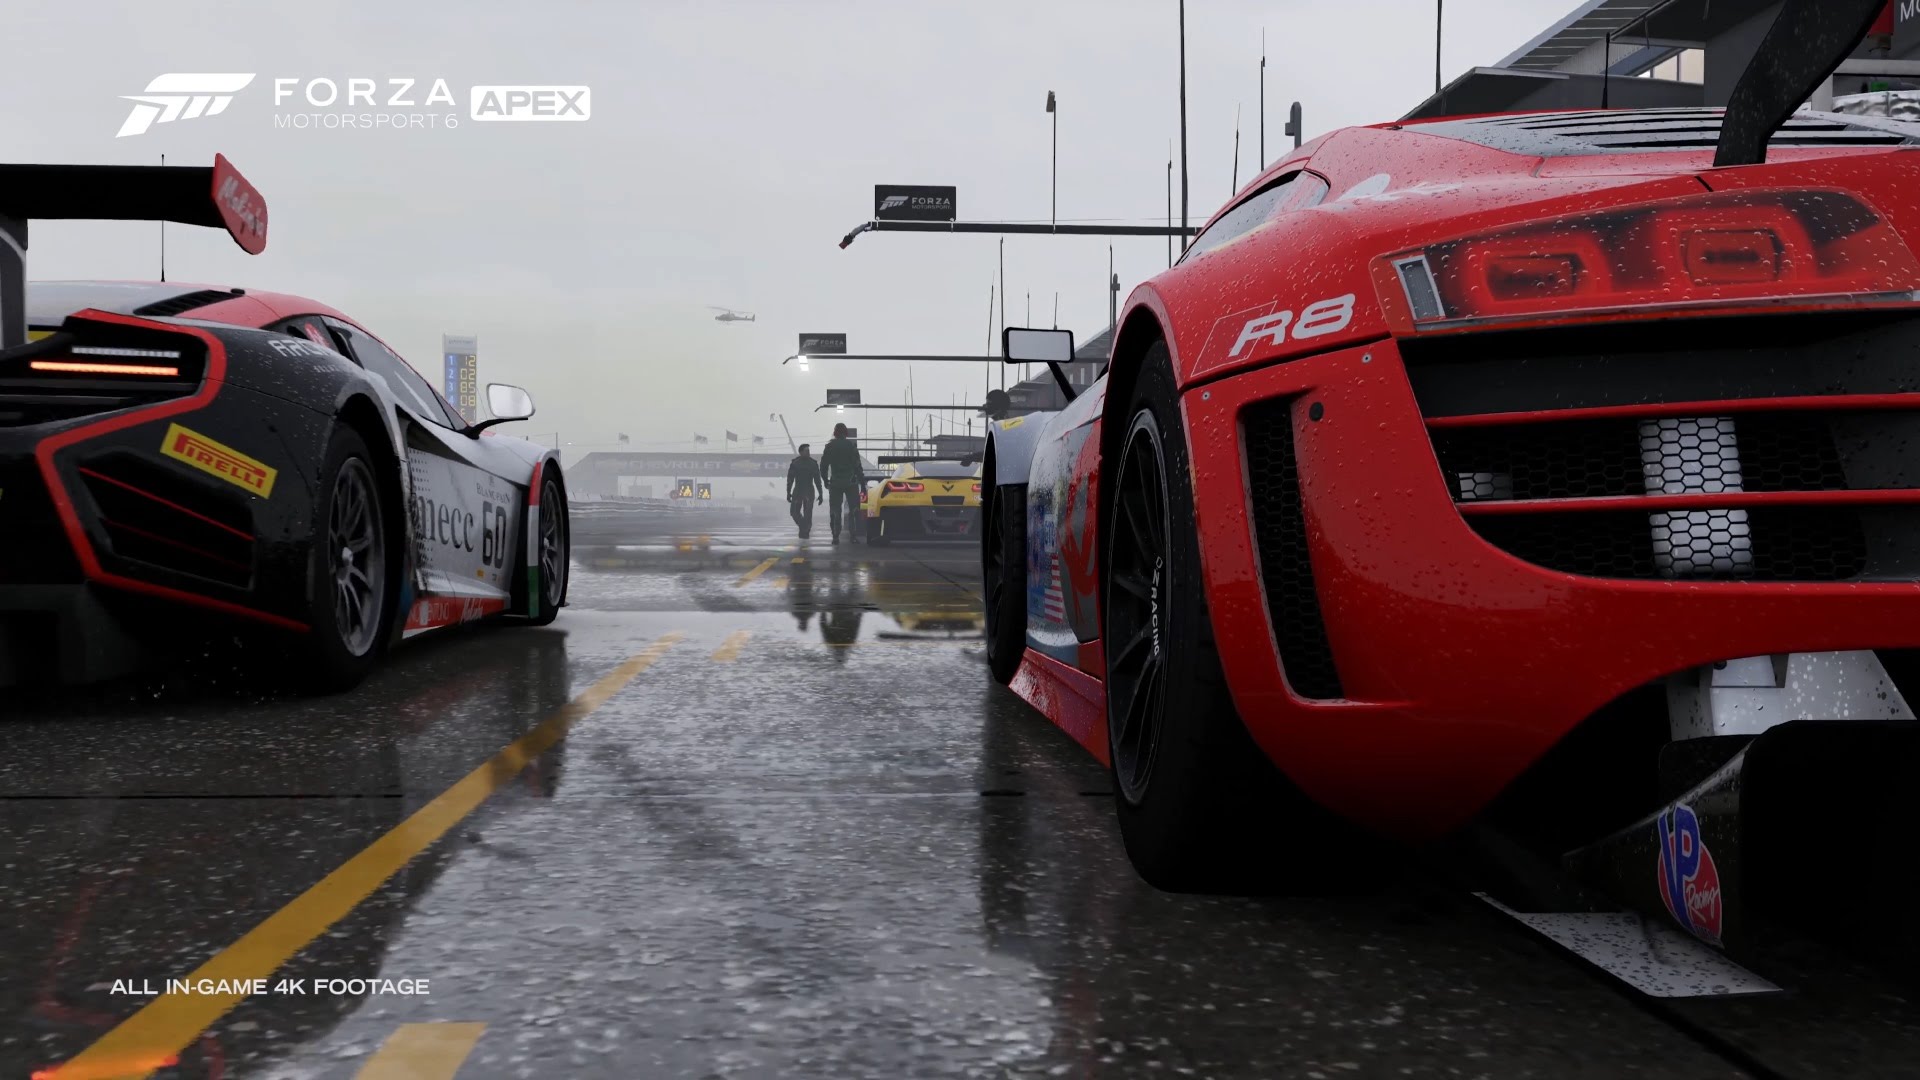 Descargar fondos de escritorio de Forza Motorsport 6: Ápice HD